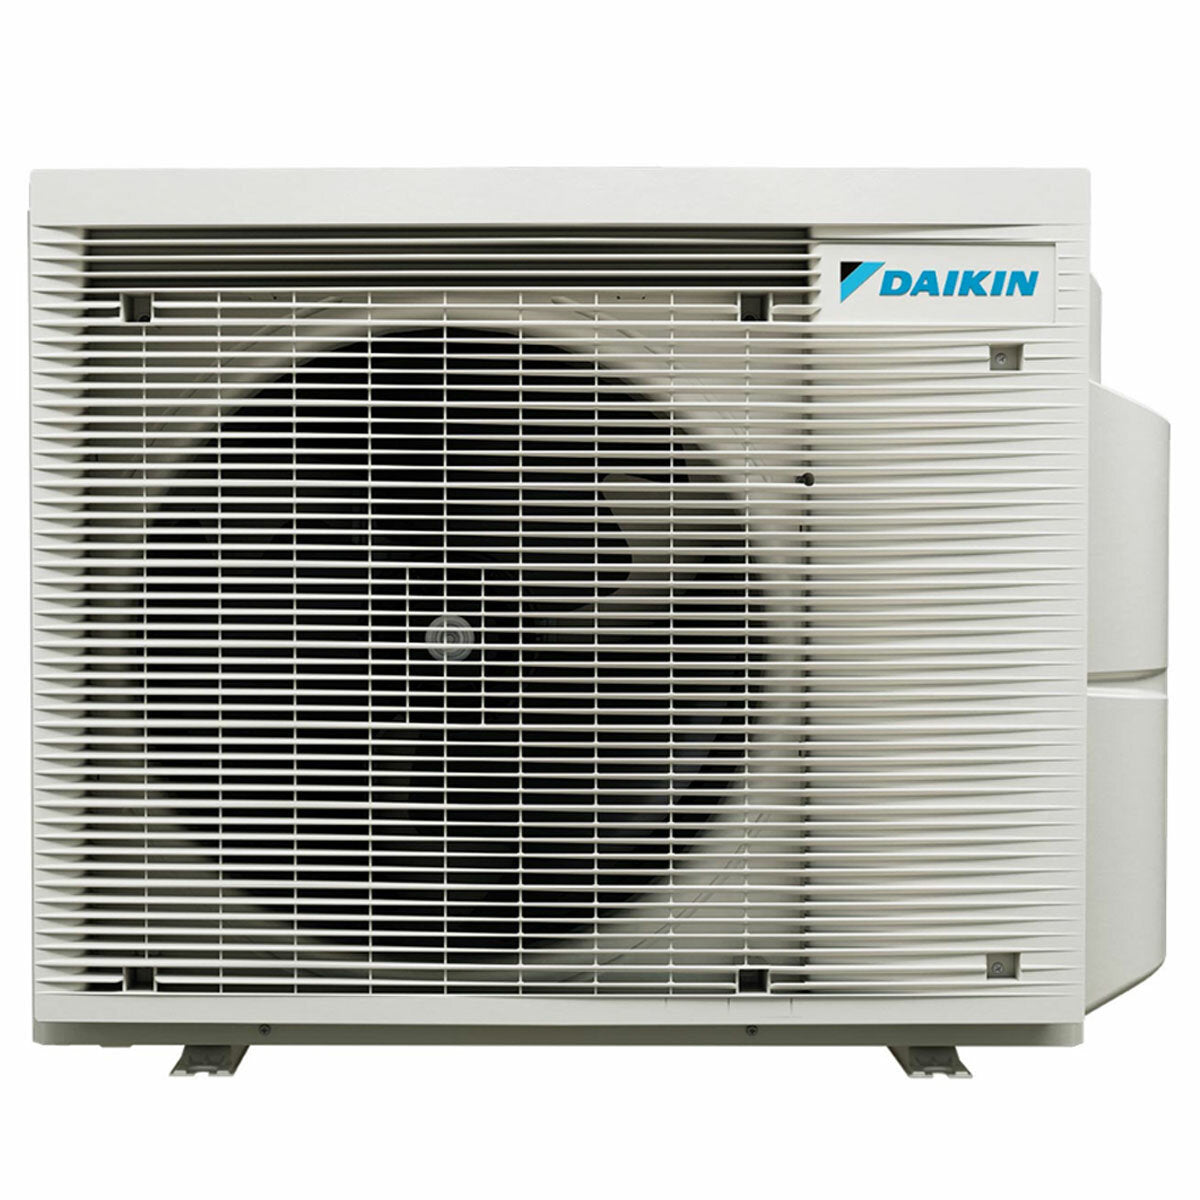 Daikin Emura 3 trial split air conditioner 7000+9000+18000 BTU inverter A+ wifi outdoor unit 6.8 kW Black